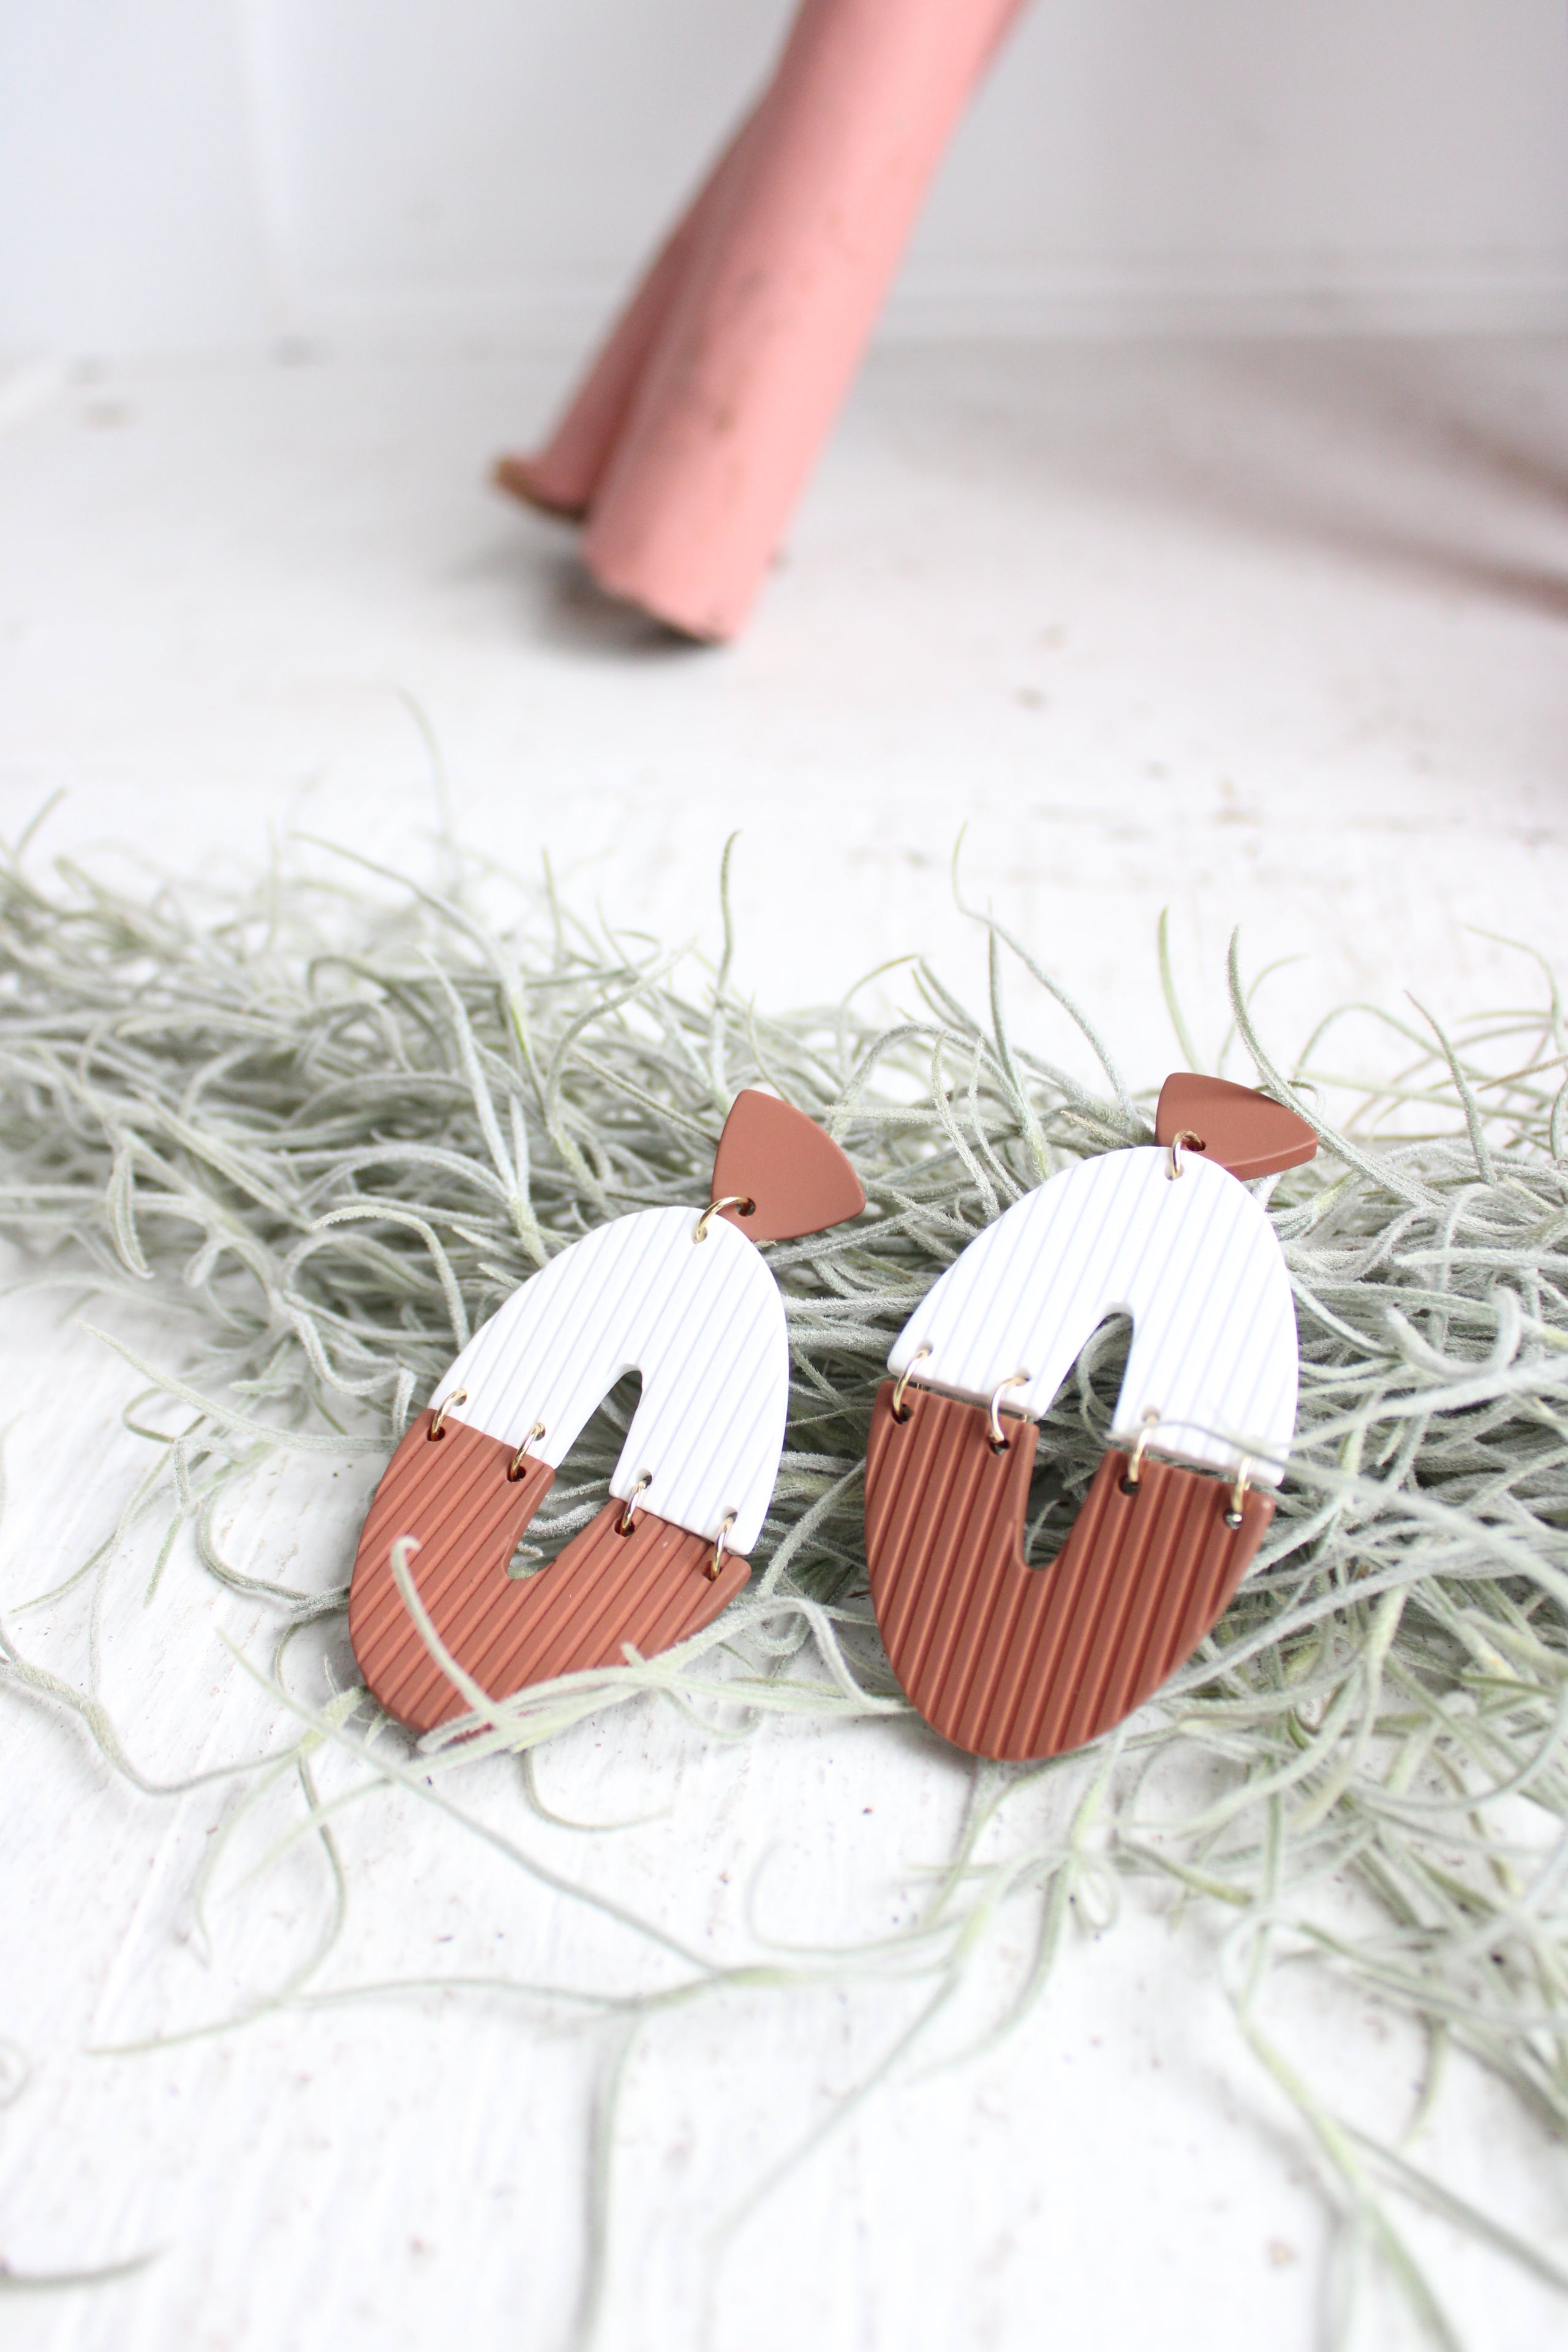 Statement Earrings|Boho|Bold Earrings|Terra Cotta Handmade Polymer Clay Earrings|Dangle Drop Earrings